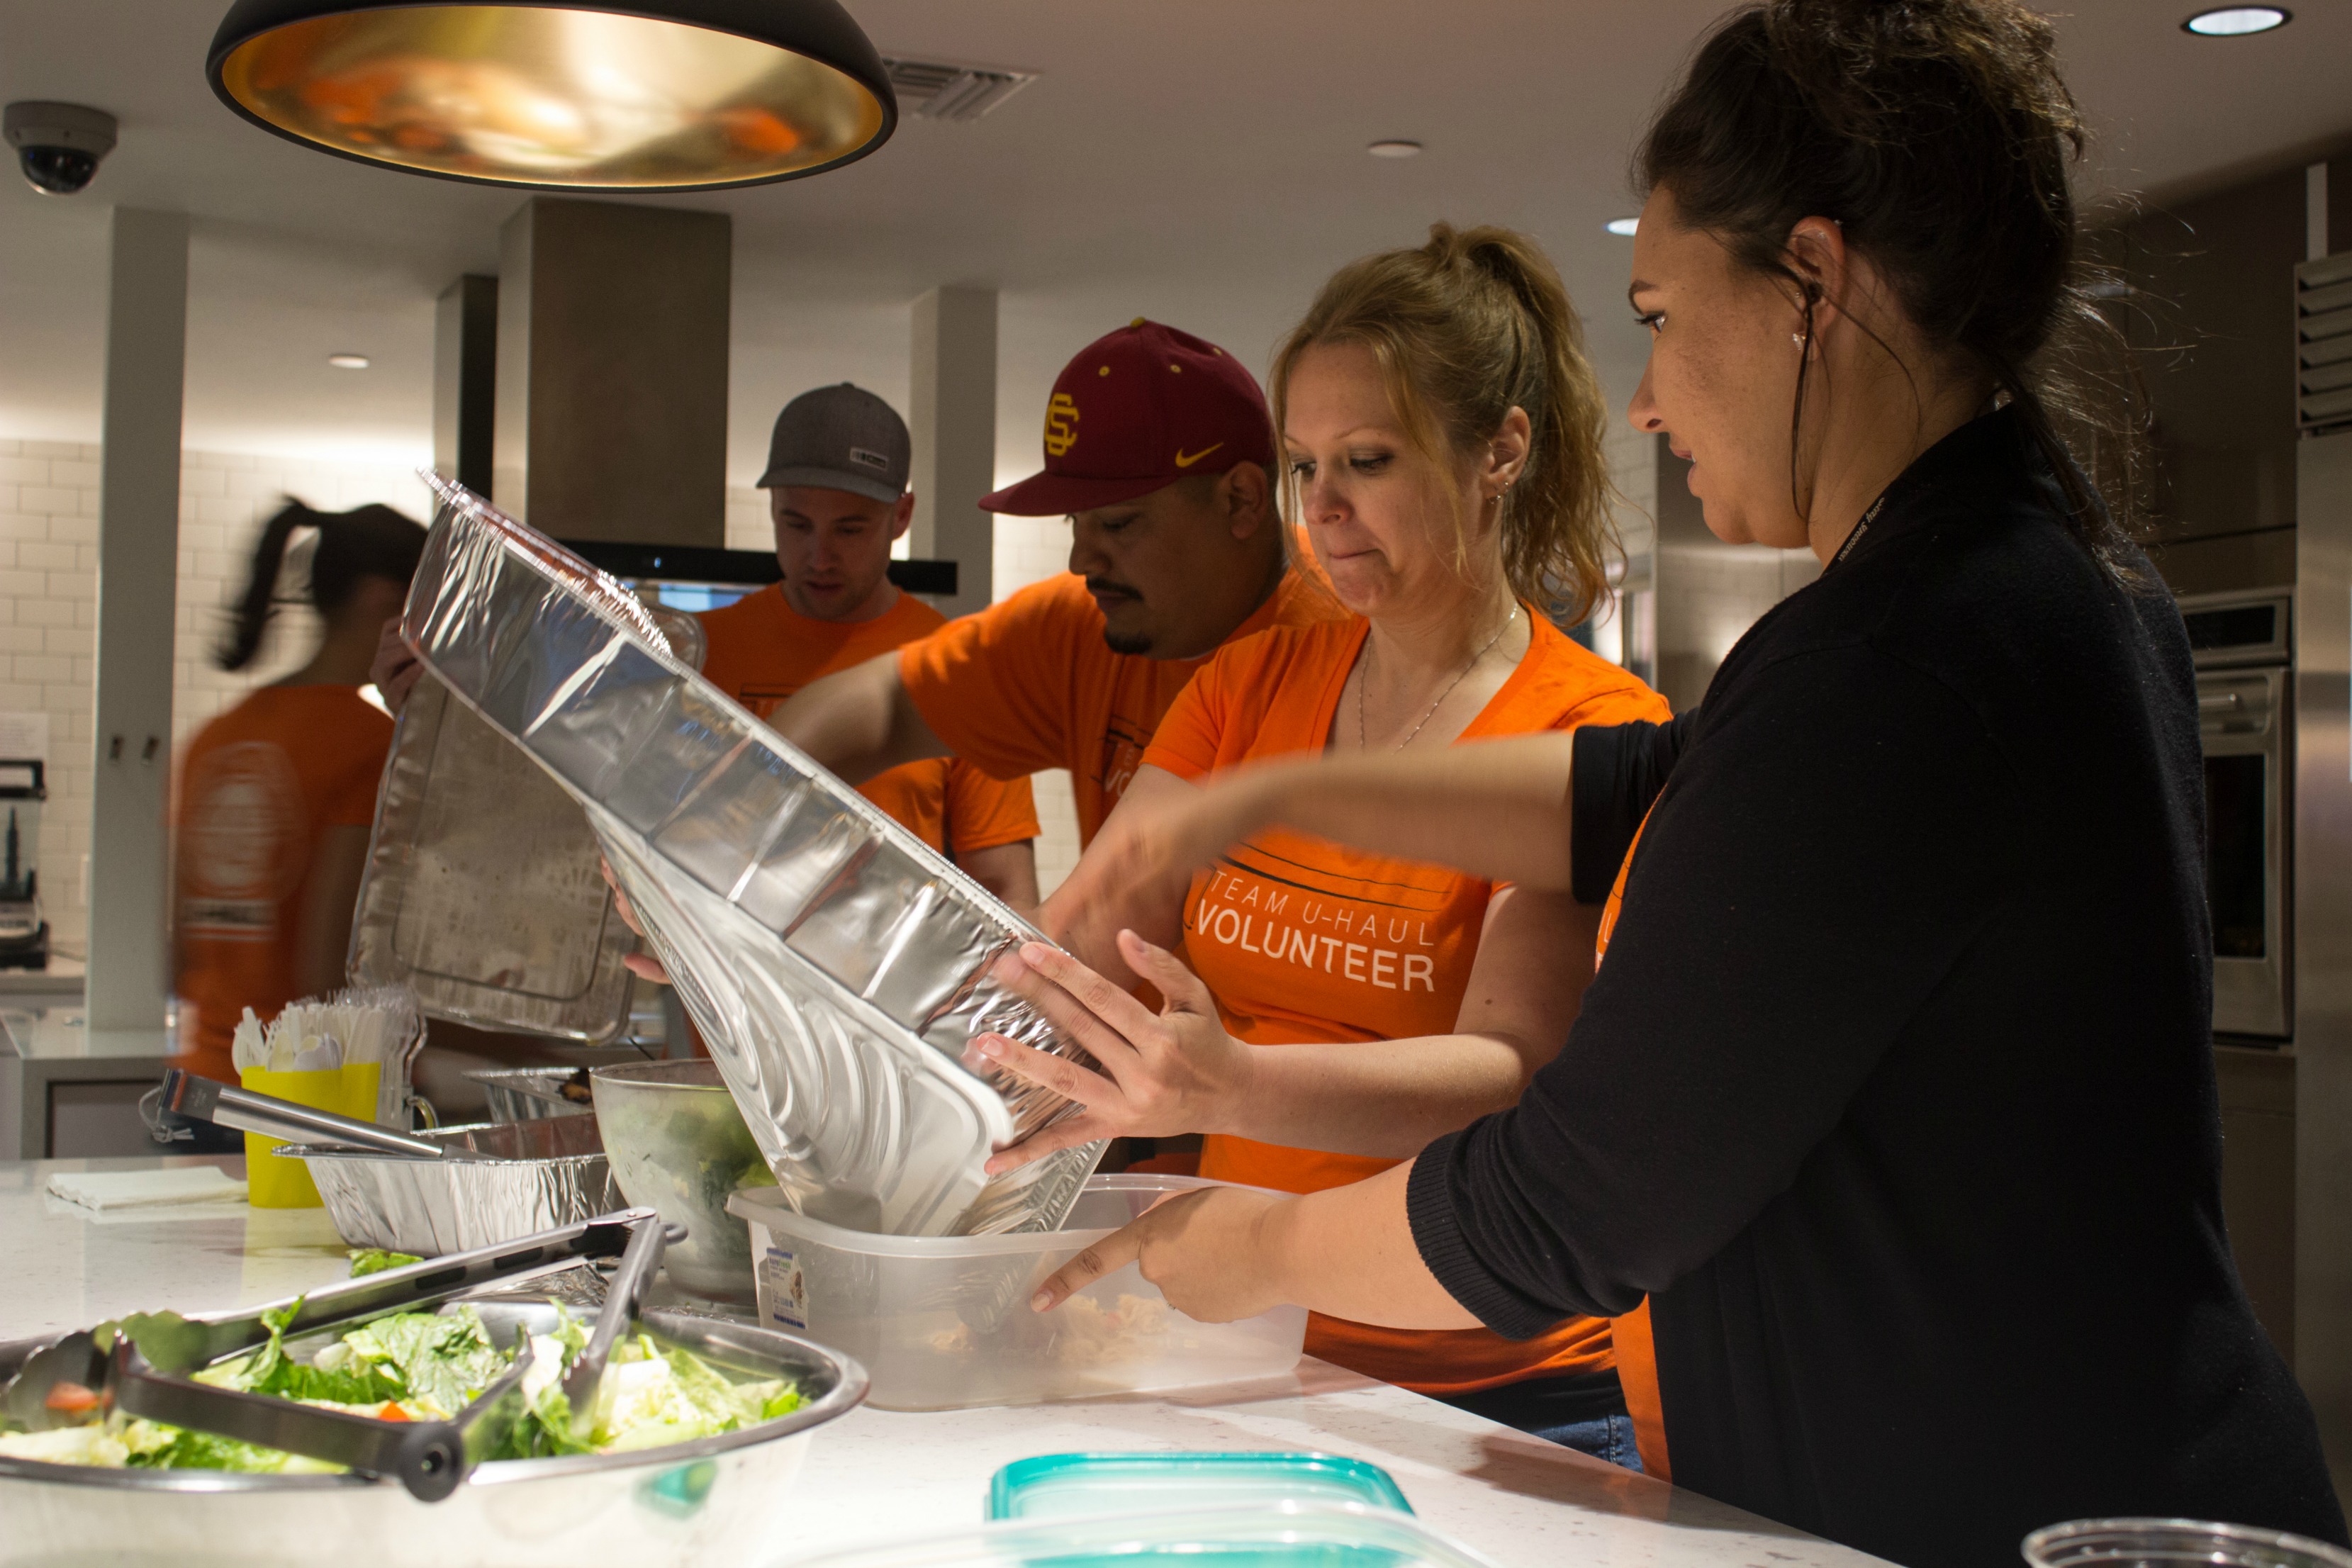 U-Haul Volunteers preparing food at Ronald McDonald House